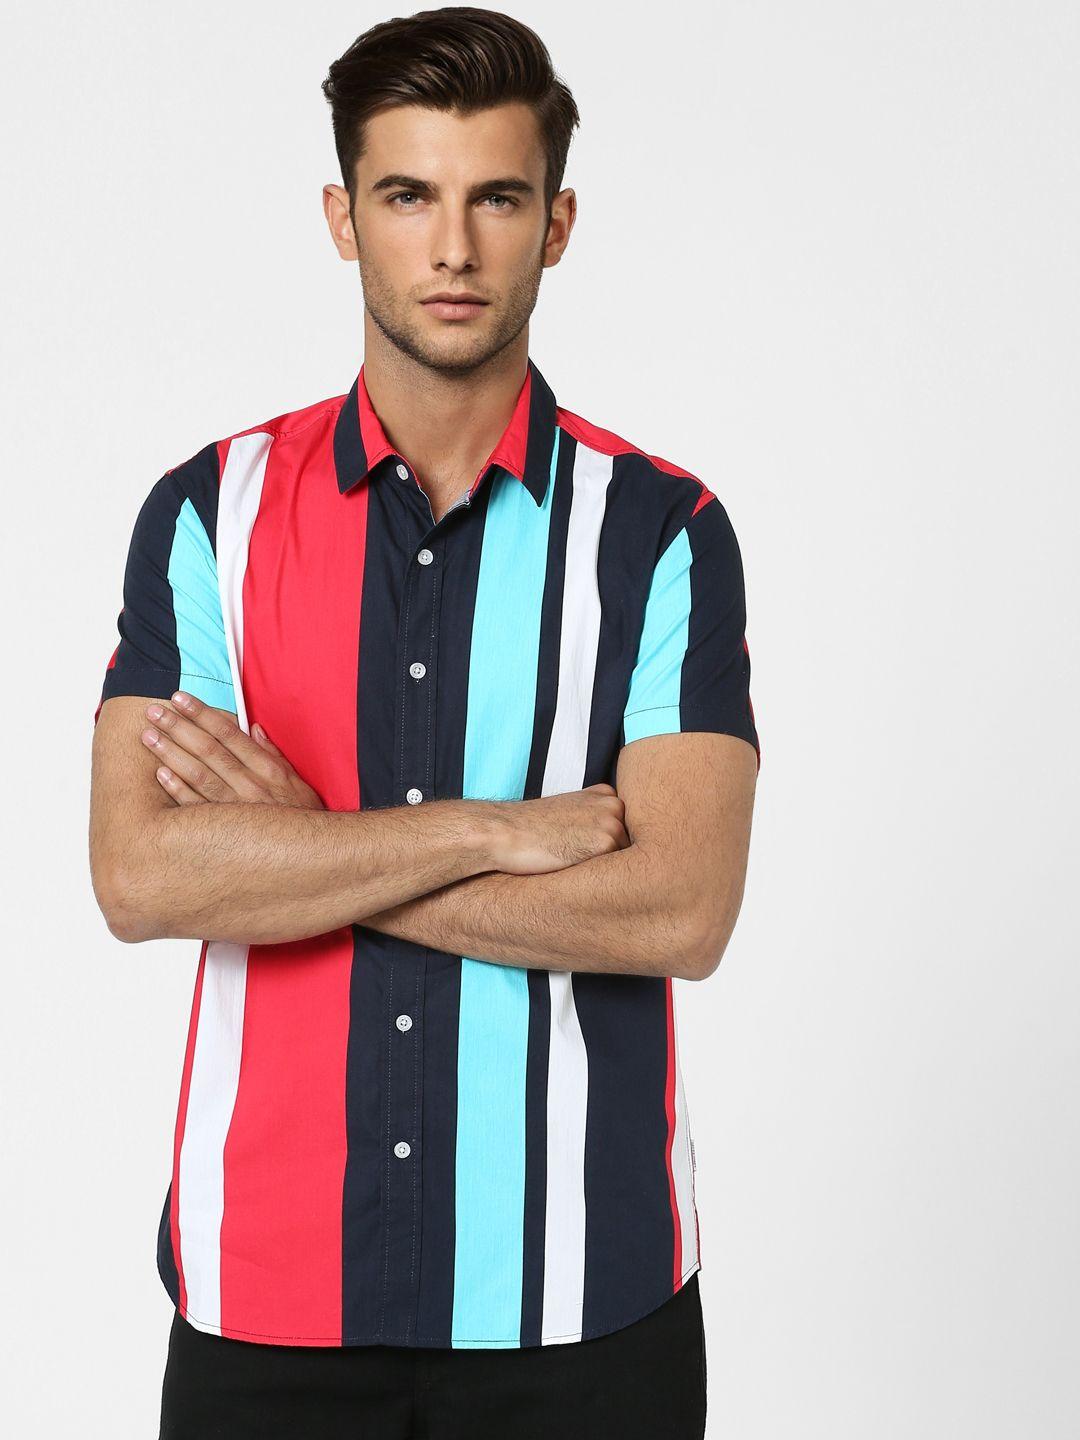 jack & jones men coral red & multicolour multi stripes slim fit pure cotton casual shirt